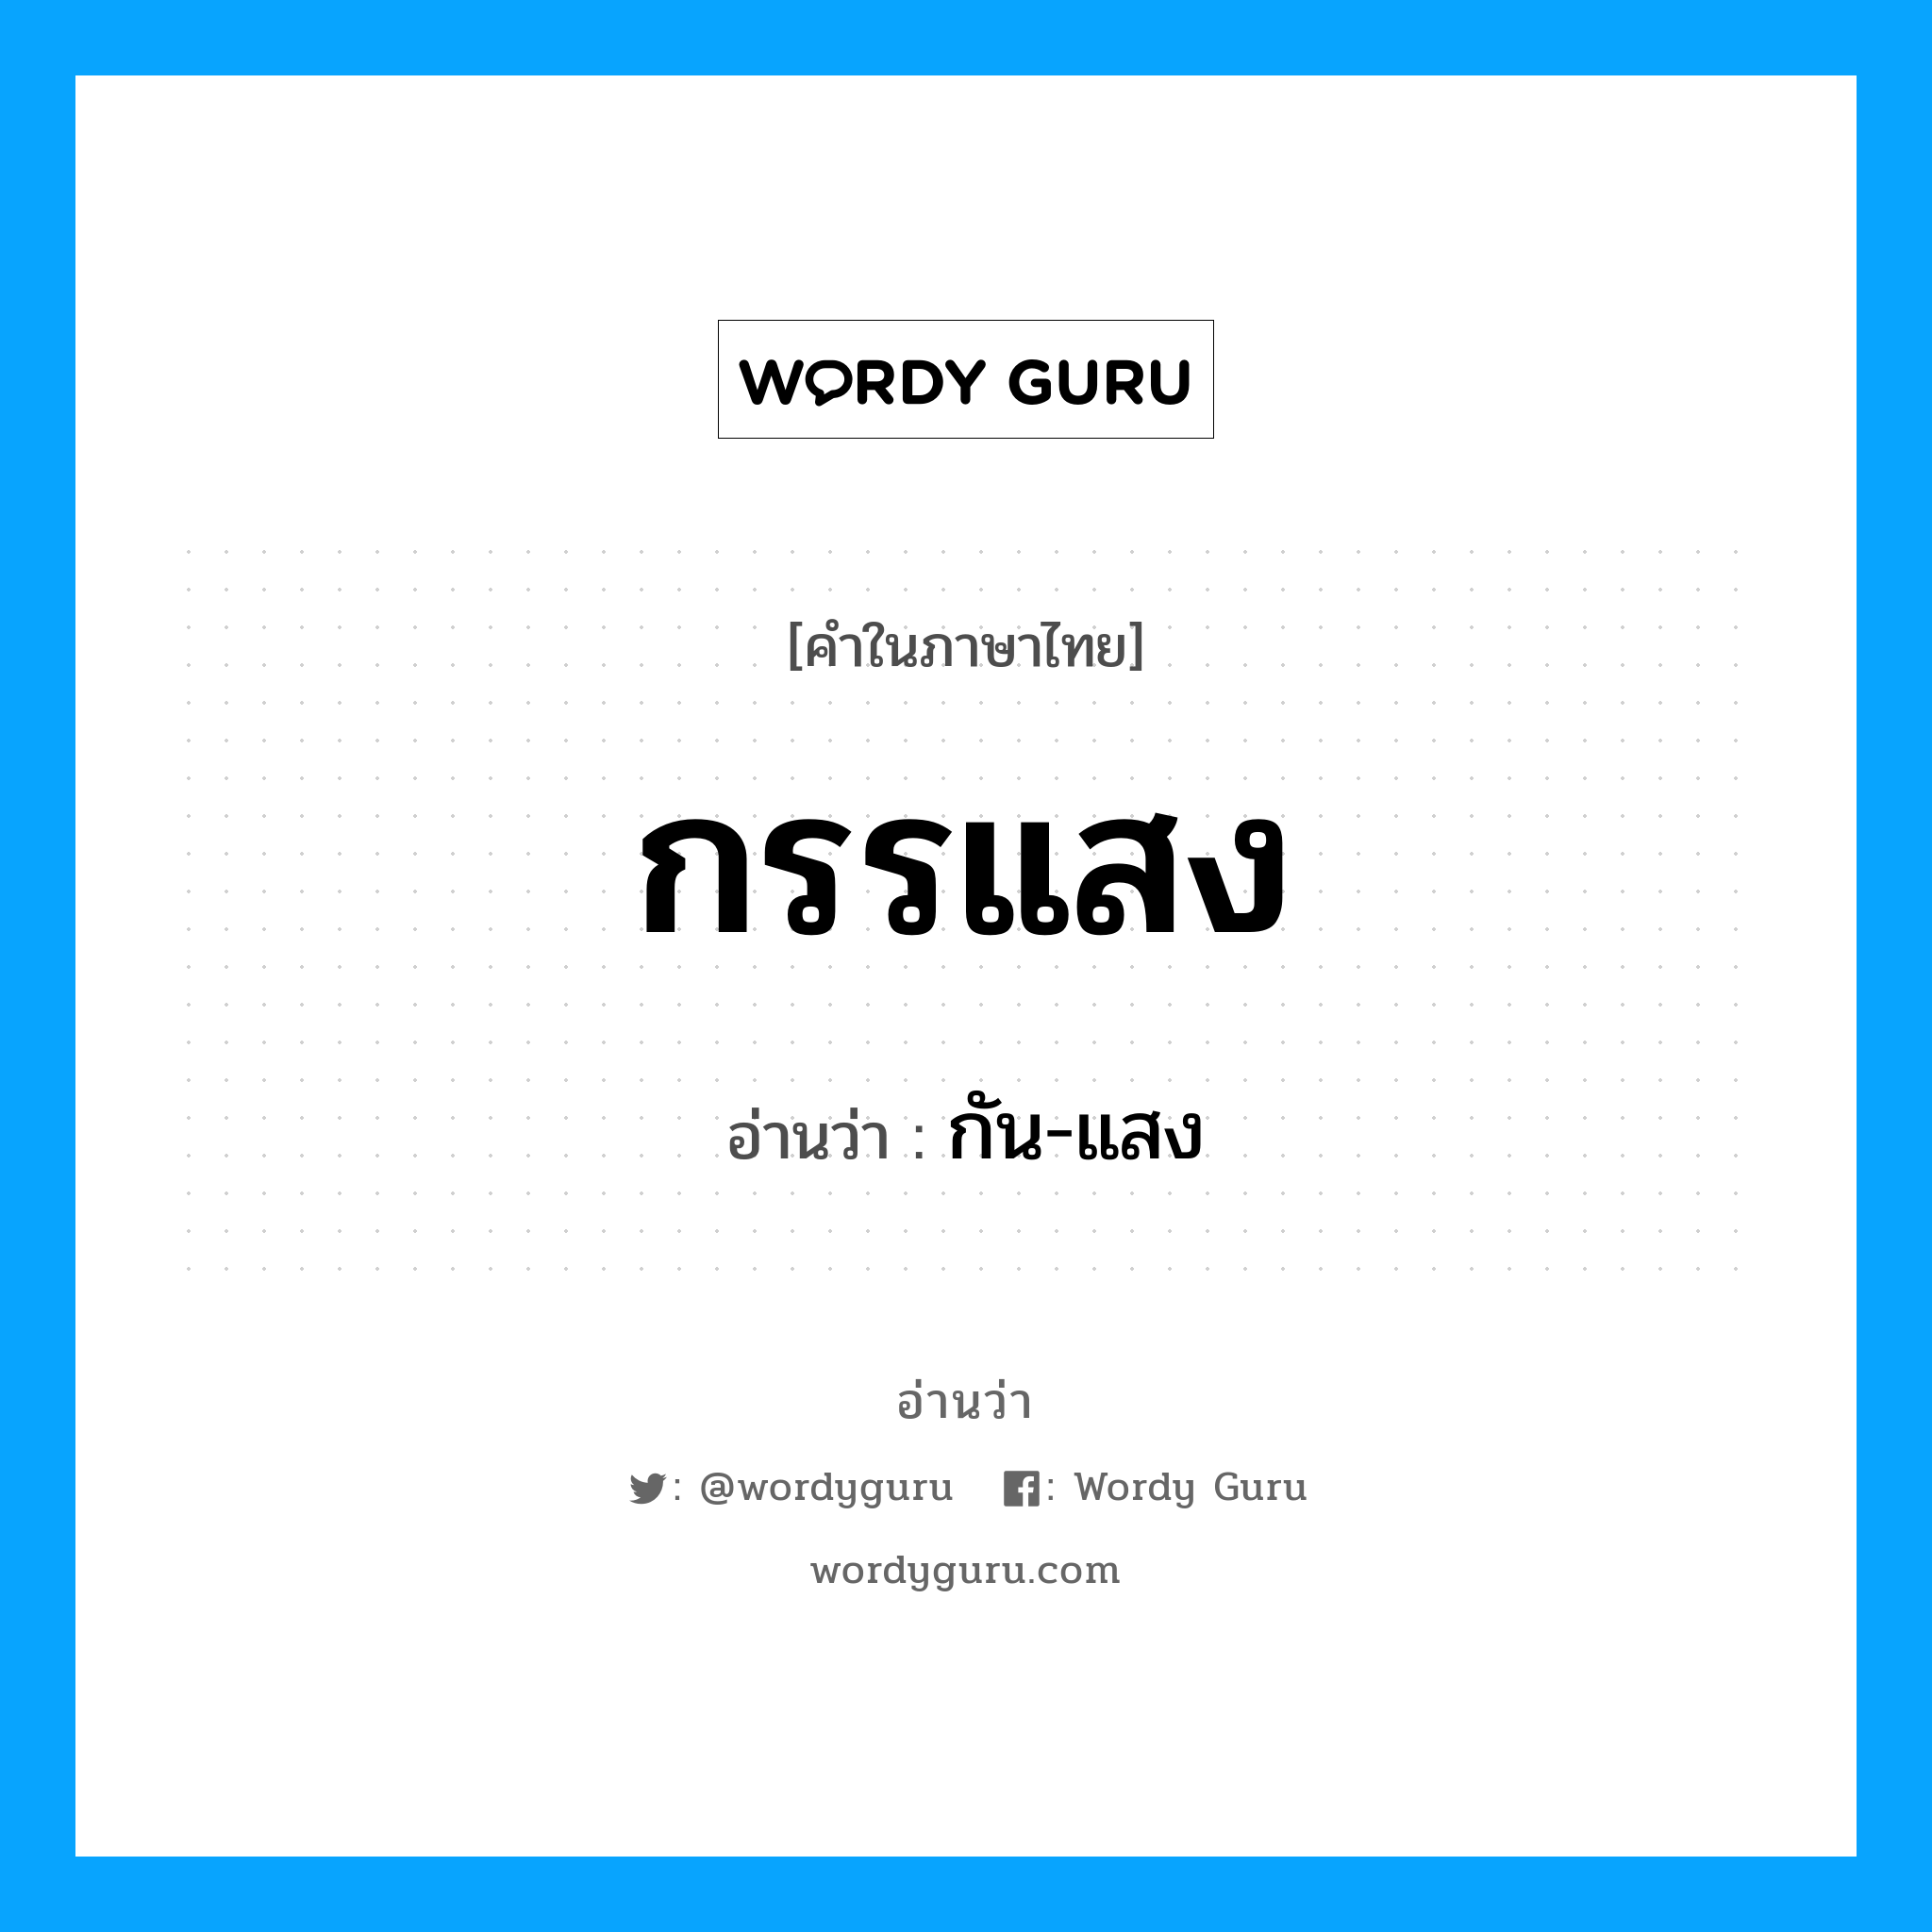 กัน-แสง เป็นคำอ่านของคำไหน?, คำในภาษาไทย กัน-แสง อ่านว่า กรรแสง